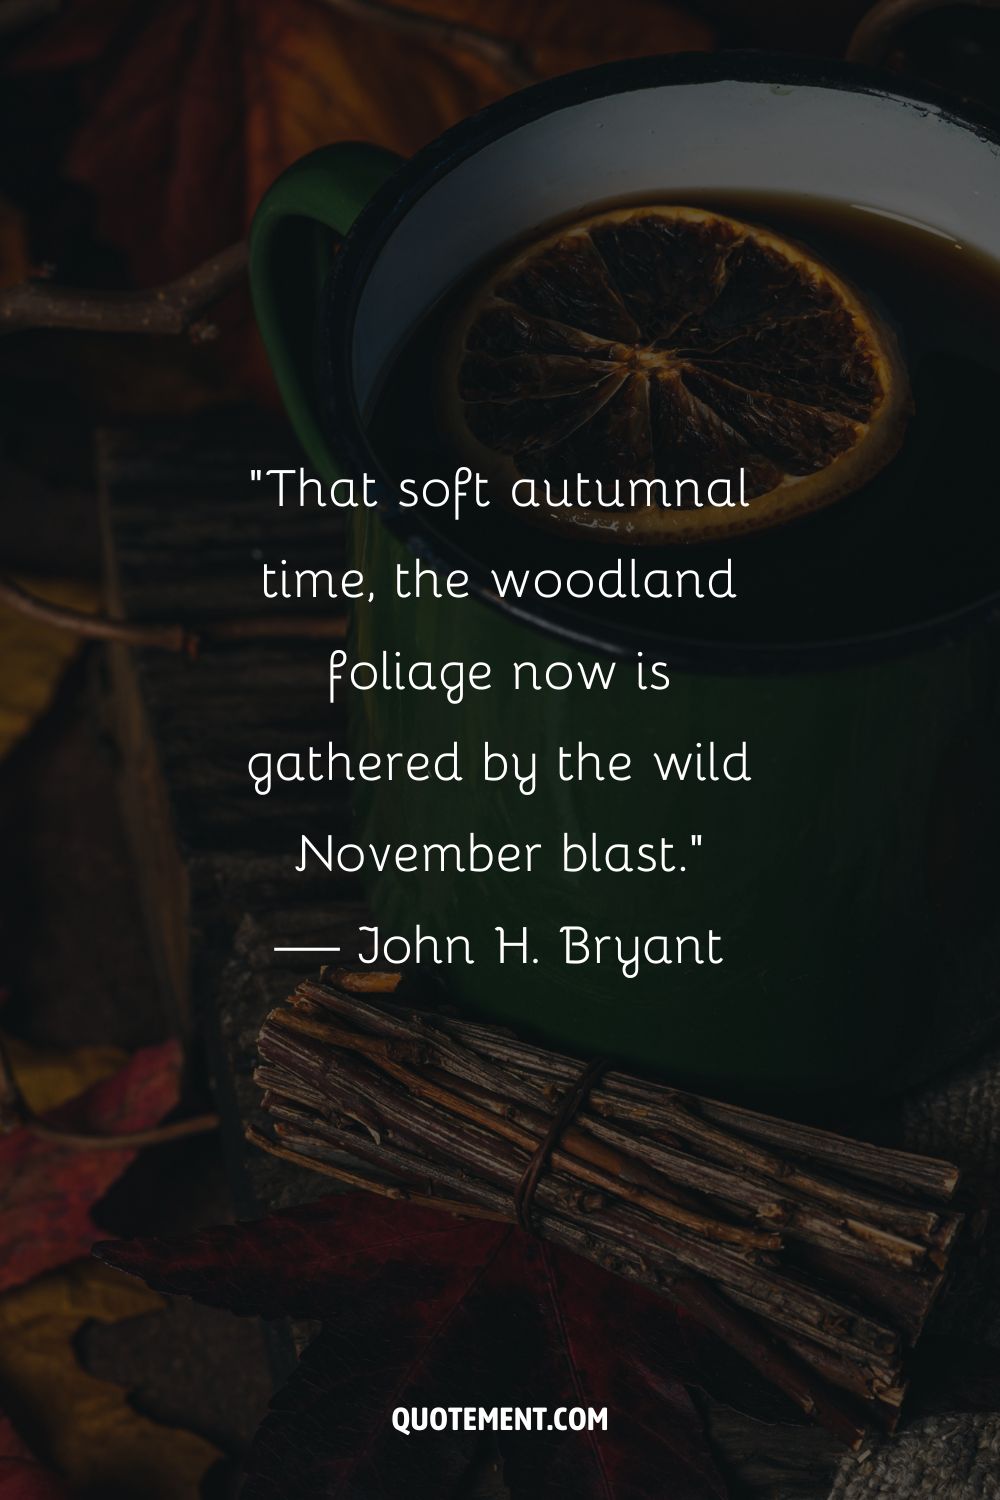 Imagen de una taza de té que representa una de las mejores citas de noviembre.